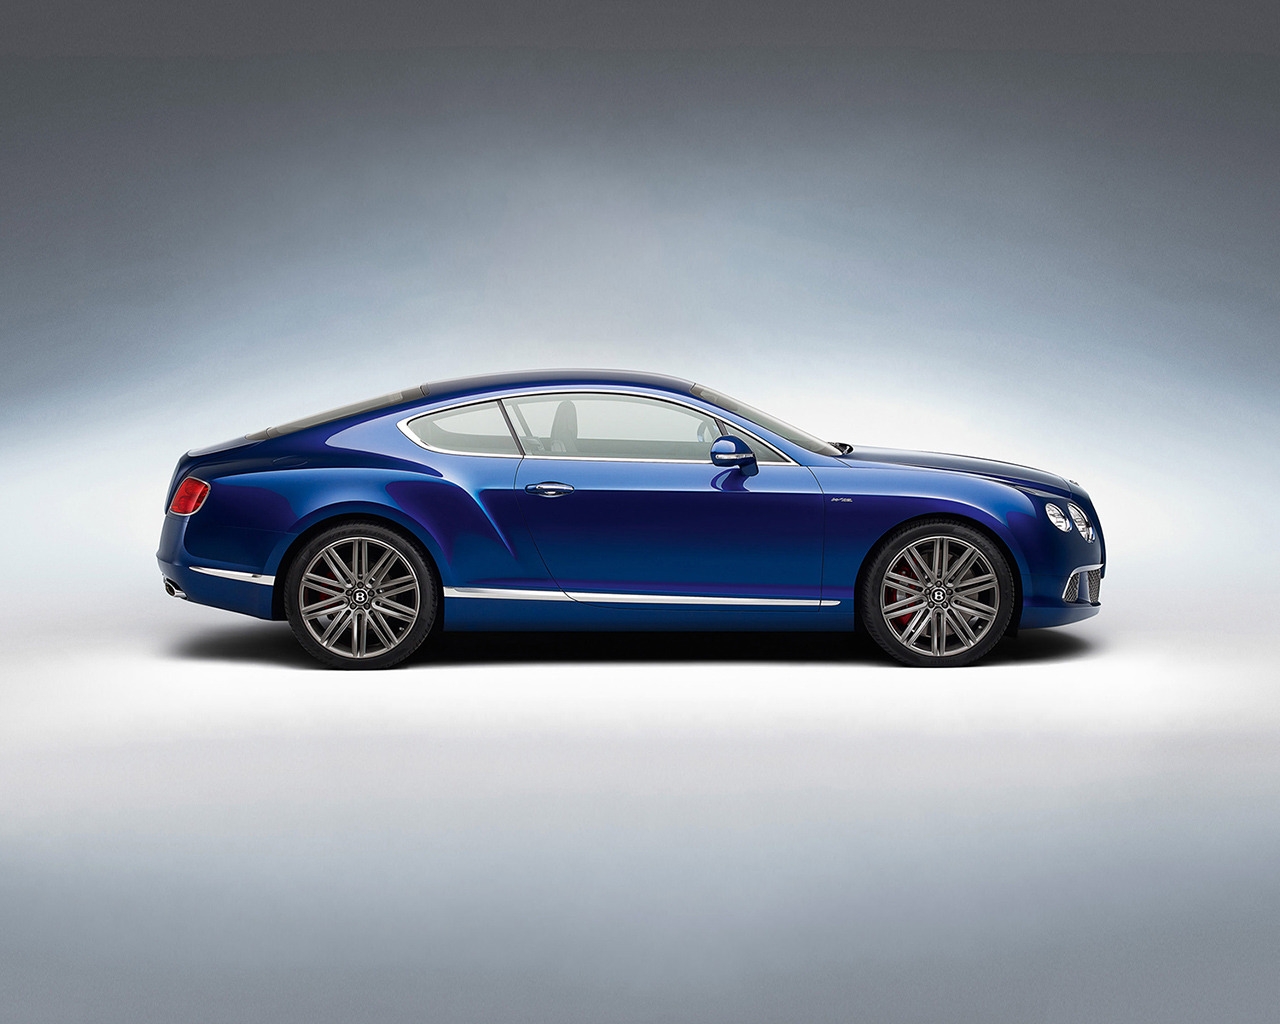 Blue Bentley GT Studio for 1280 x 1024 resolution